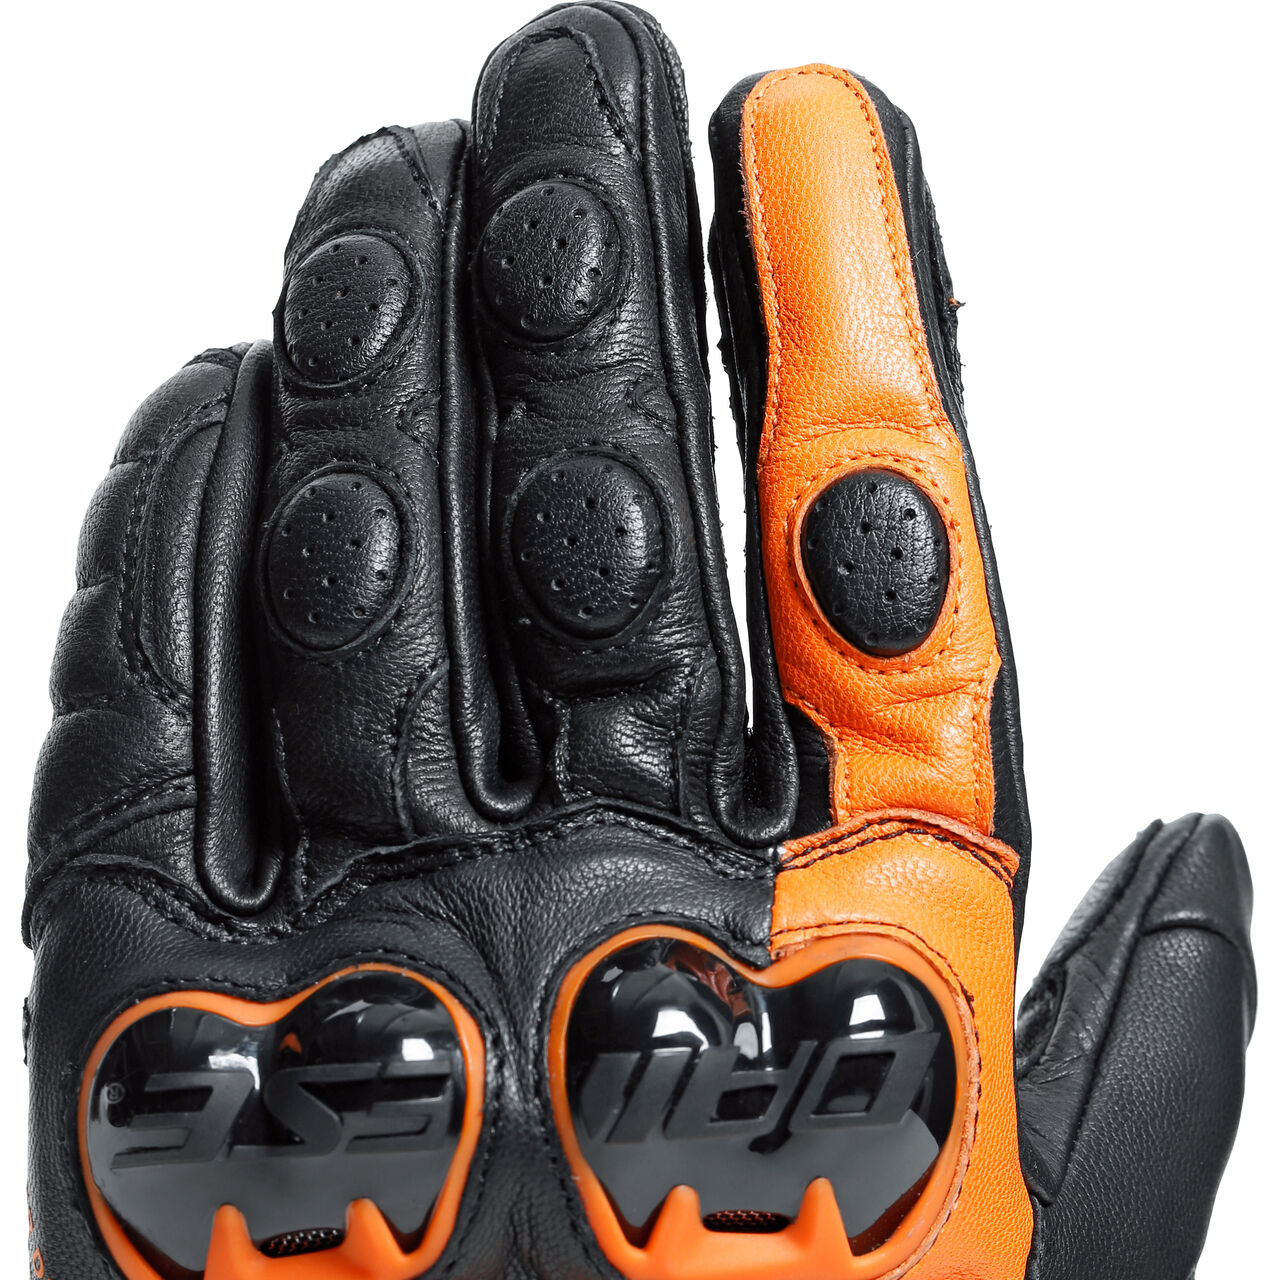 Impeto Handschuh schwarz/orange